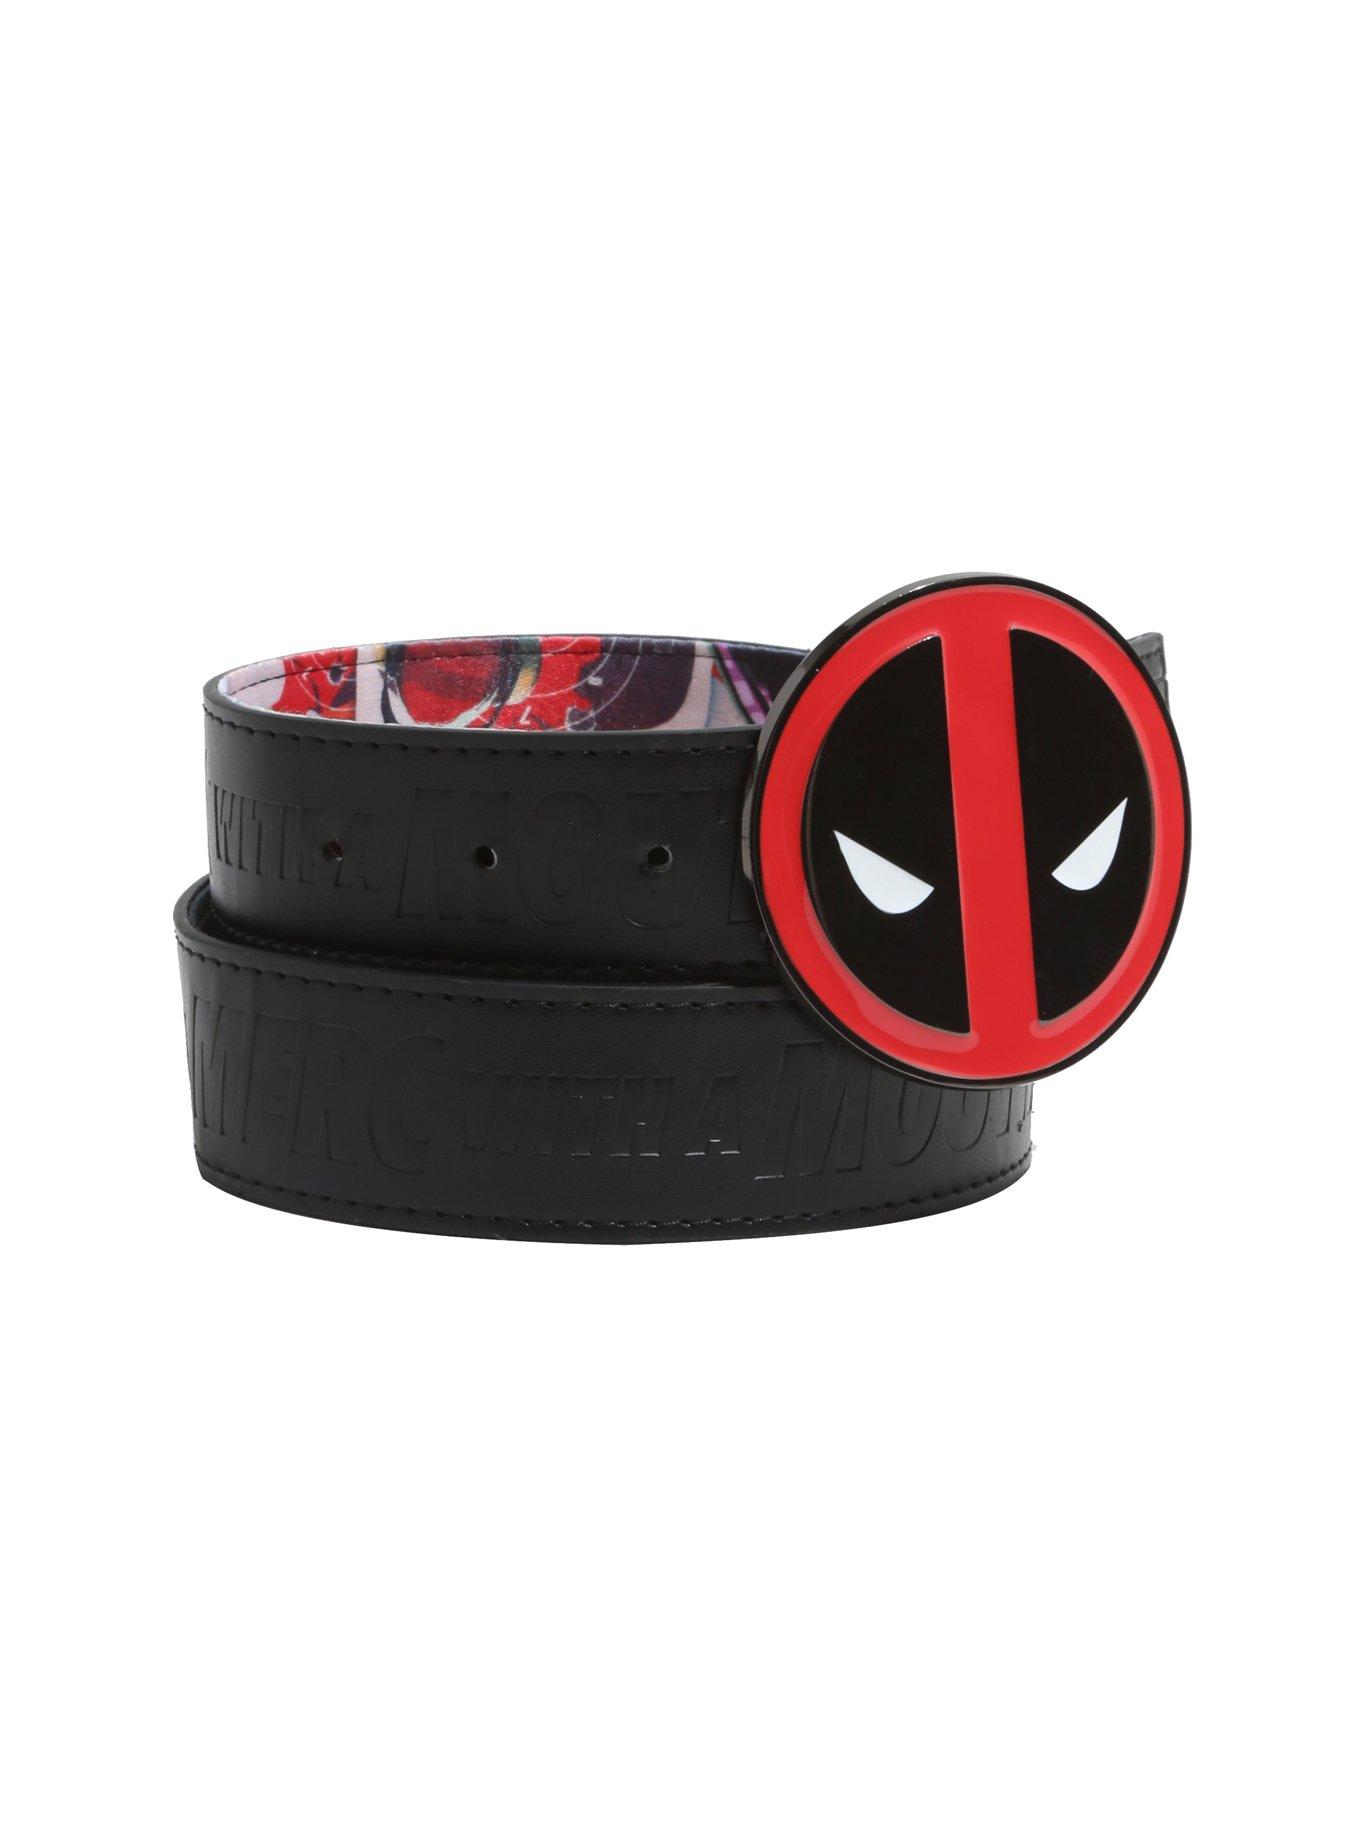 Marvel Deadpool Reversible Belt & Buckle Set, , alternate